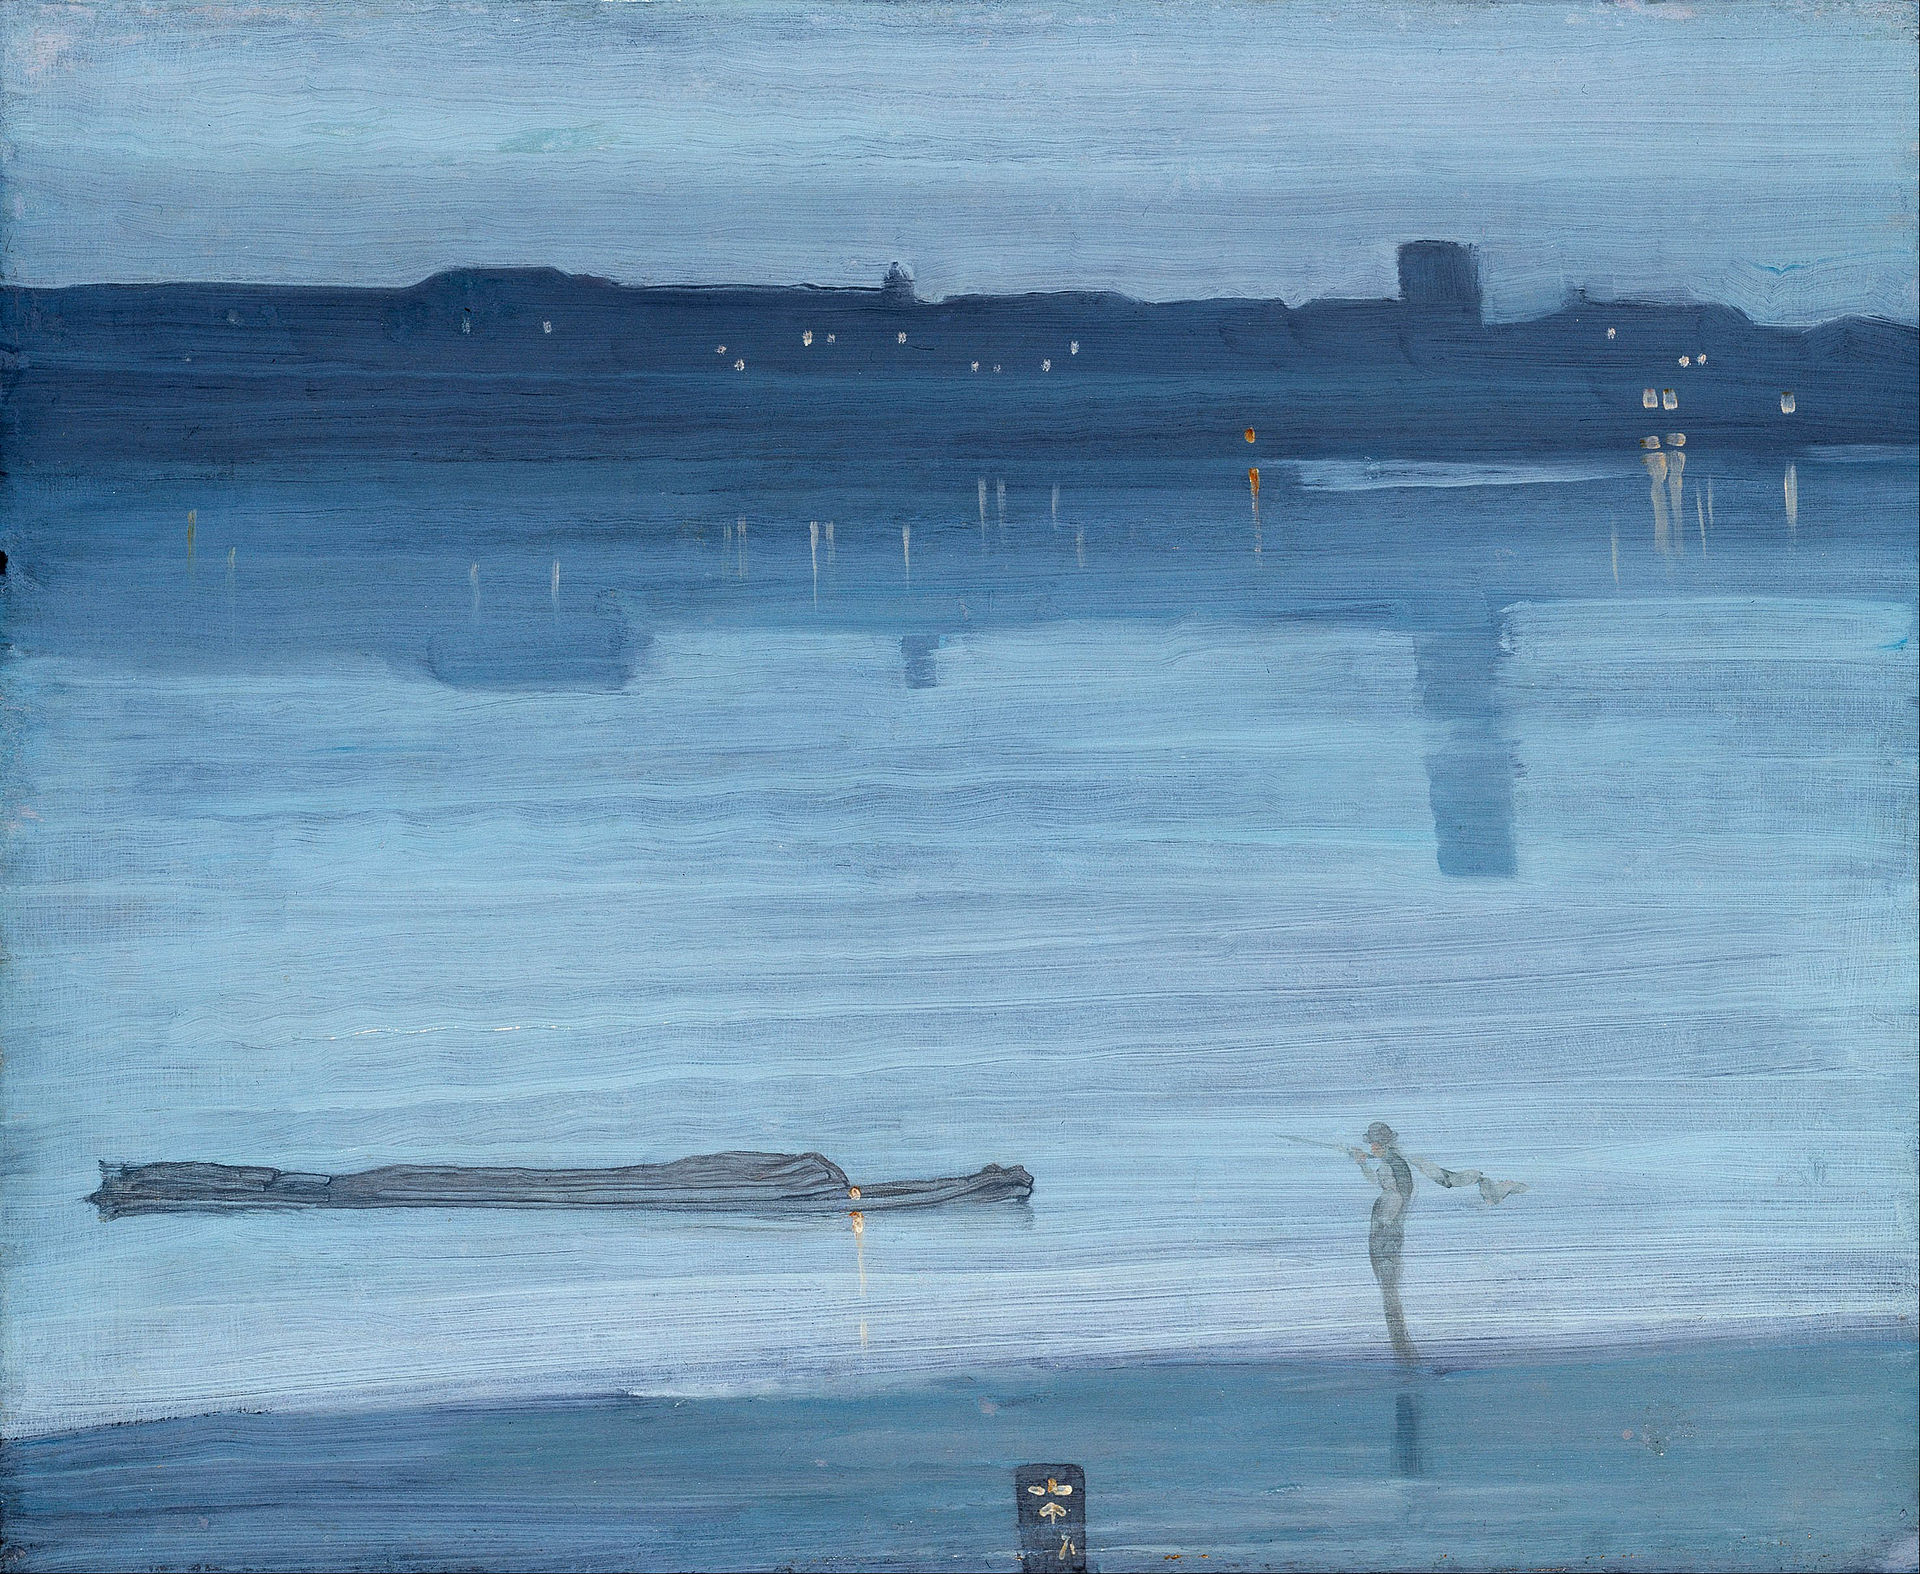 녹턴: 파란색과 은색 - 첼시(Nocturne: Blue and Silver - Chelsea) by James Abbott McNeill Whistler - 1871 - 60.8 x 50.2 cm 